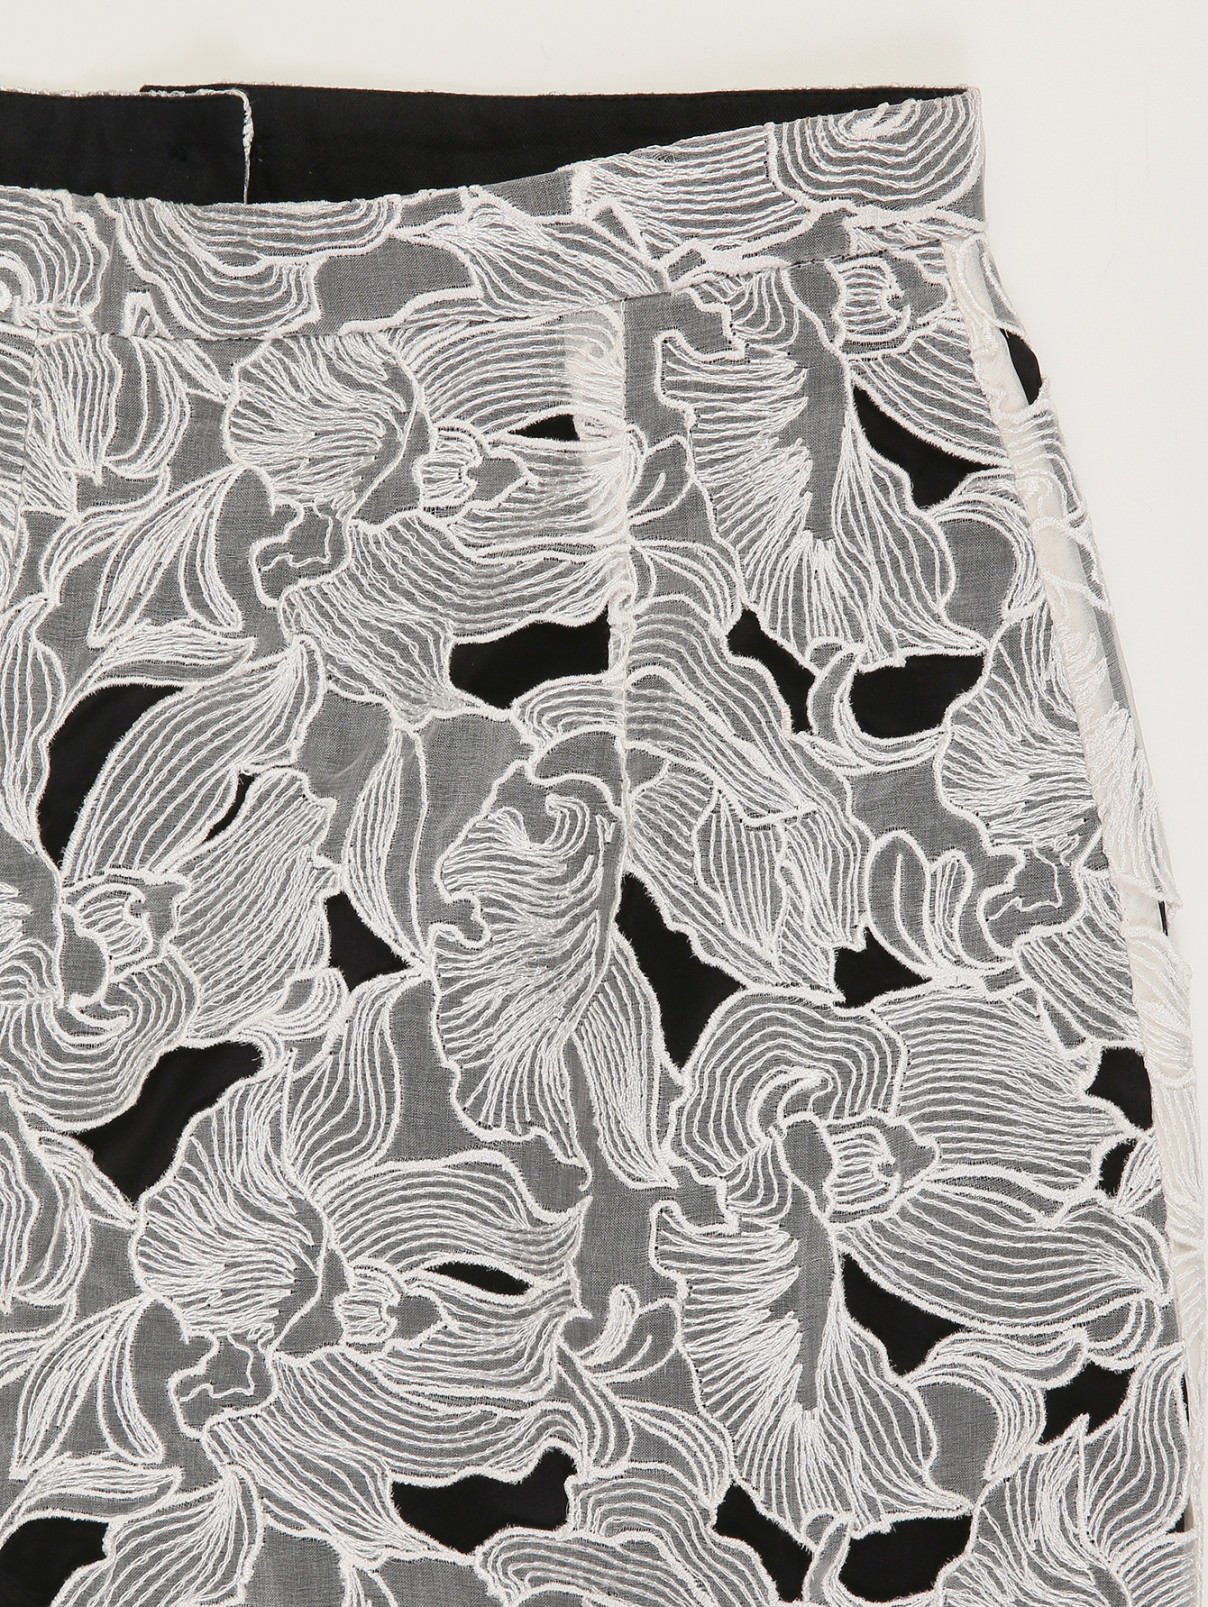 Брюки из шелка с прозрачным кружевным узором и шортами внутри Peter Pilotto  –  Деталь  – Цвет:  Белый